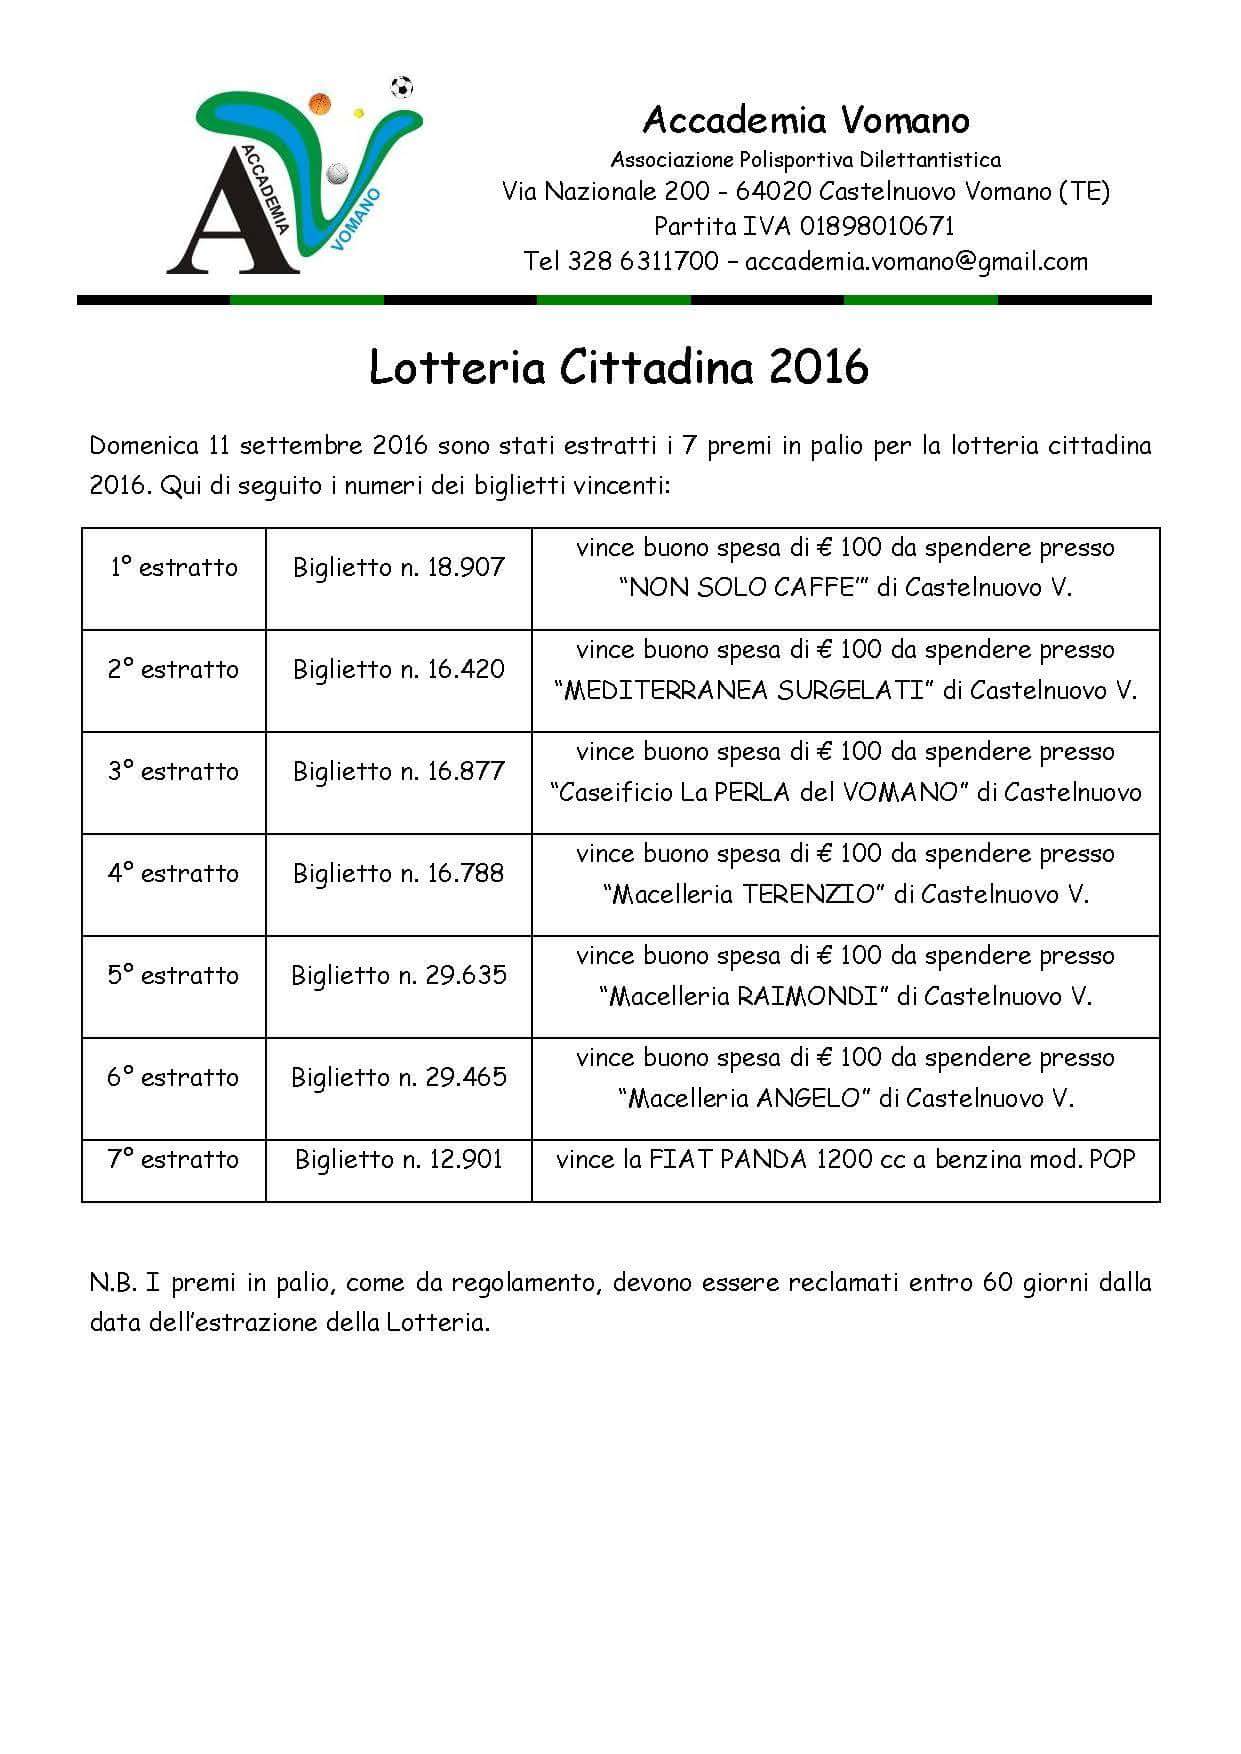 lotteria_accademia_vomano